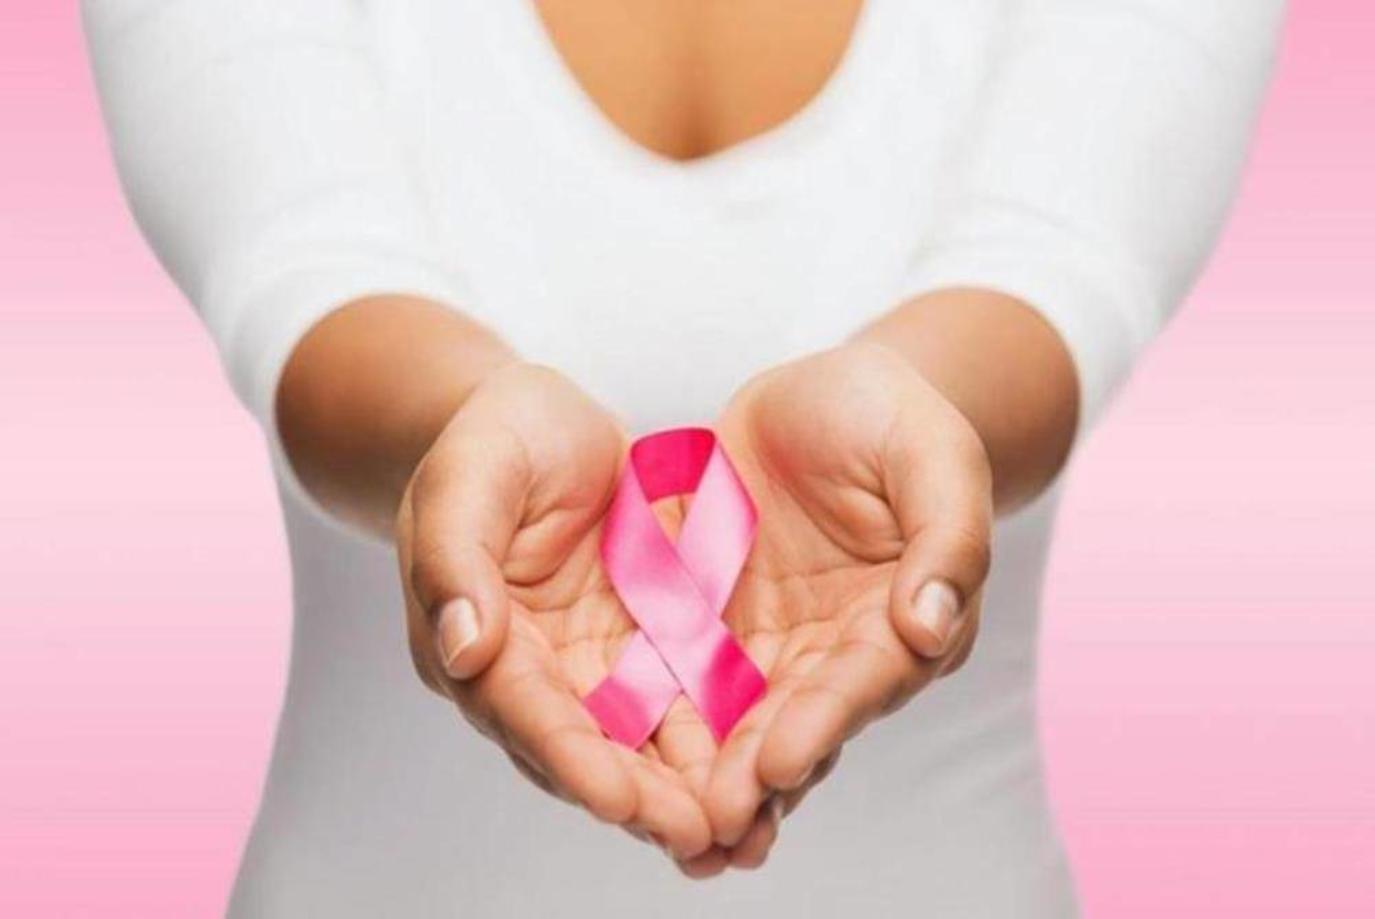 سرطان الثدي: قريبا دواء جديد من أكثر الأدوية نشاطاً في تاريخ المرض